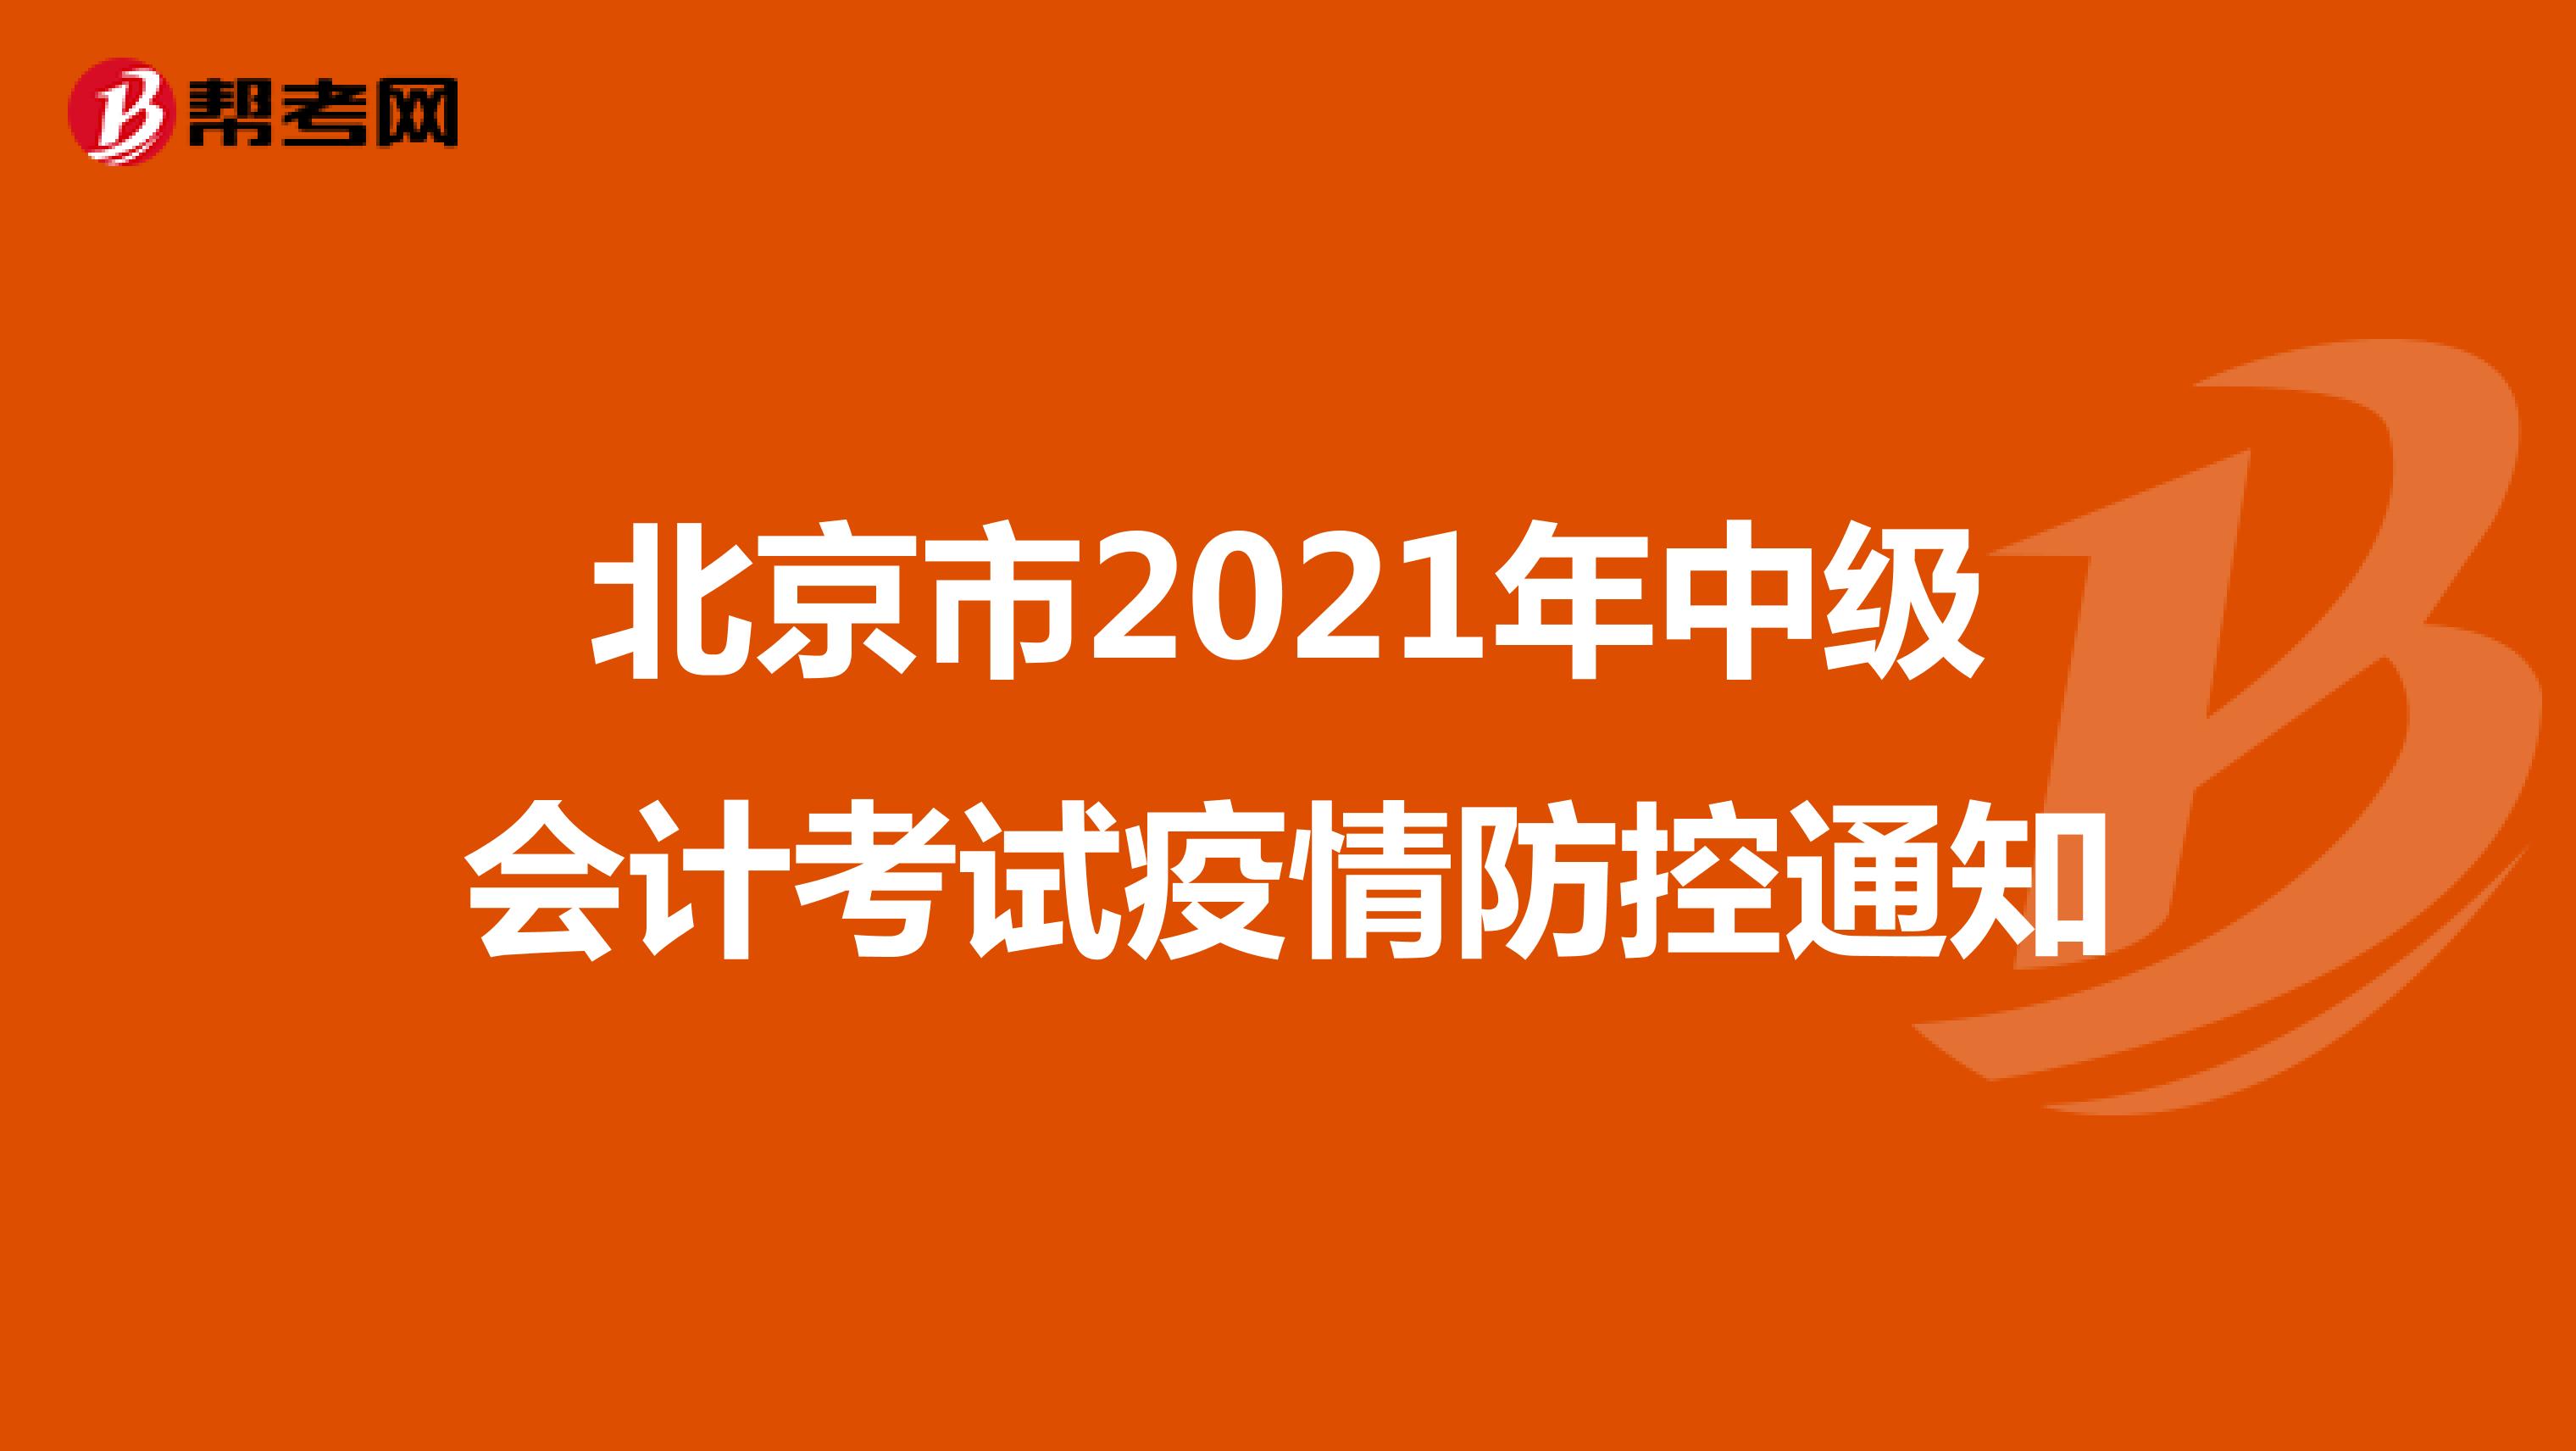 北京市2021年中级会计考试疫情防控通知